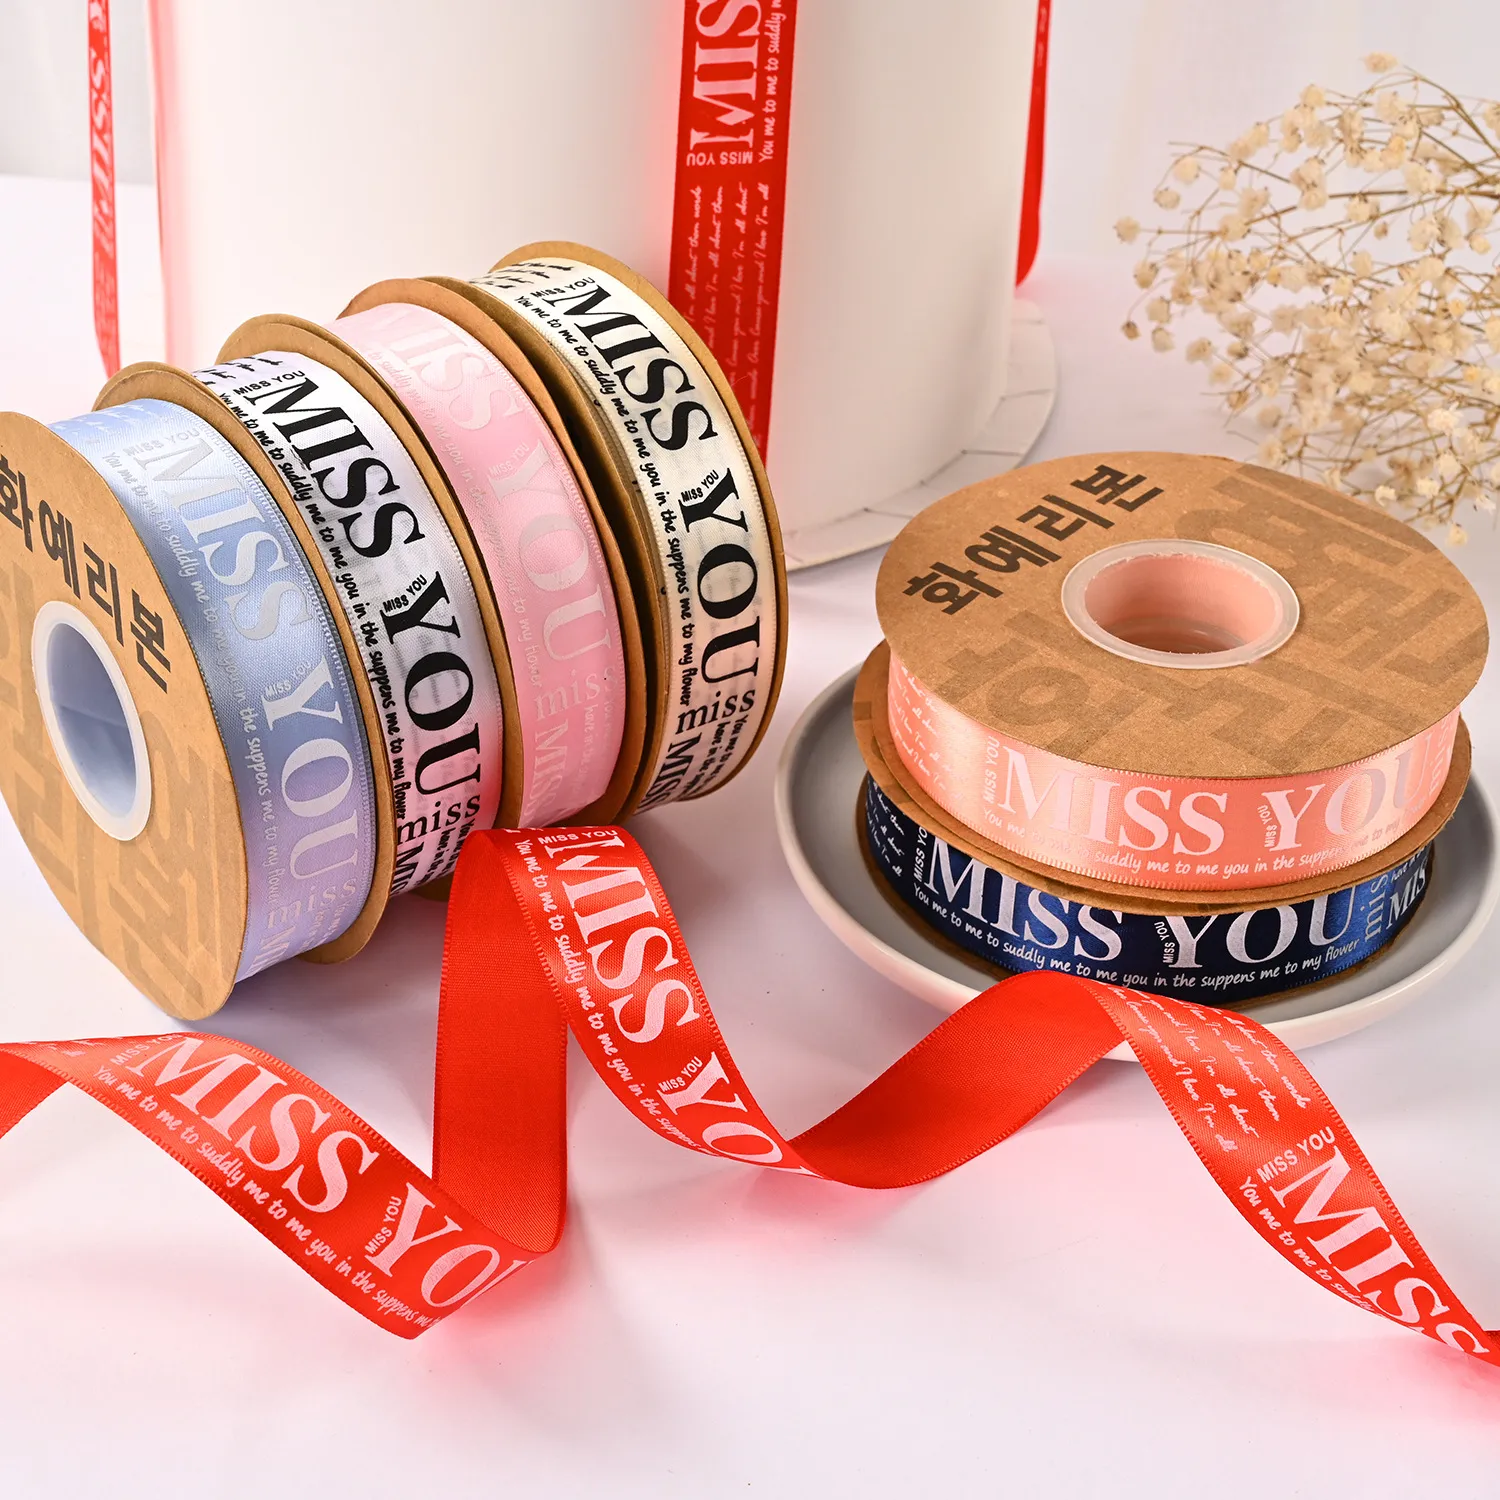 Boîte d'estampage à chaud imprimé en polyester 50 Yards 25 mm Gift Bows Boîte cadeau décoratif de mariage enveloppe de bricolage décoration de fête d'artisanat